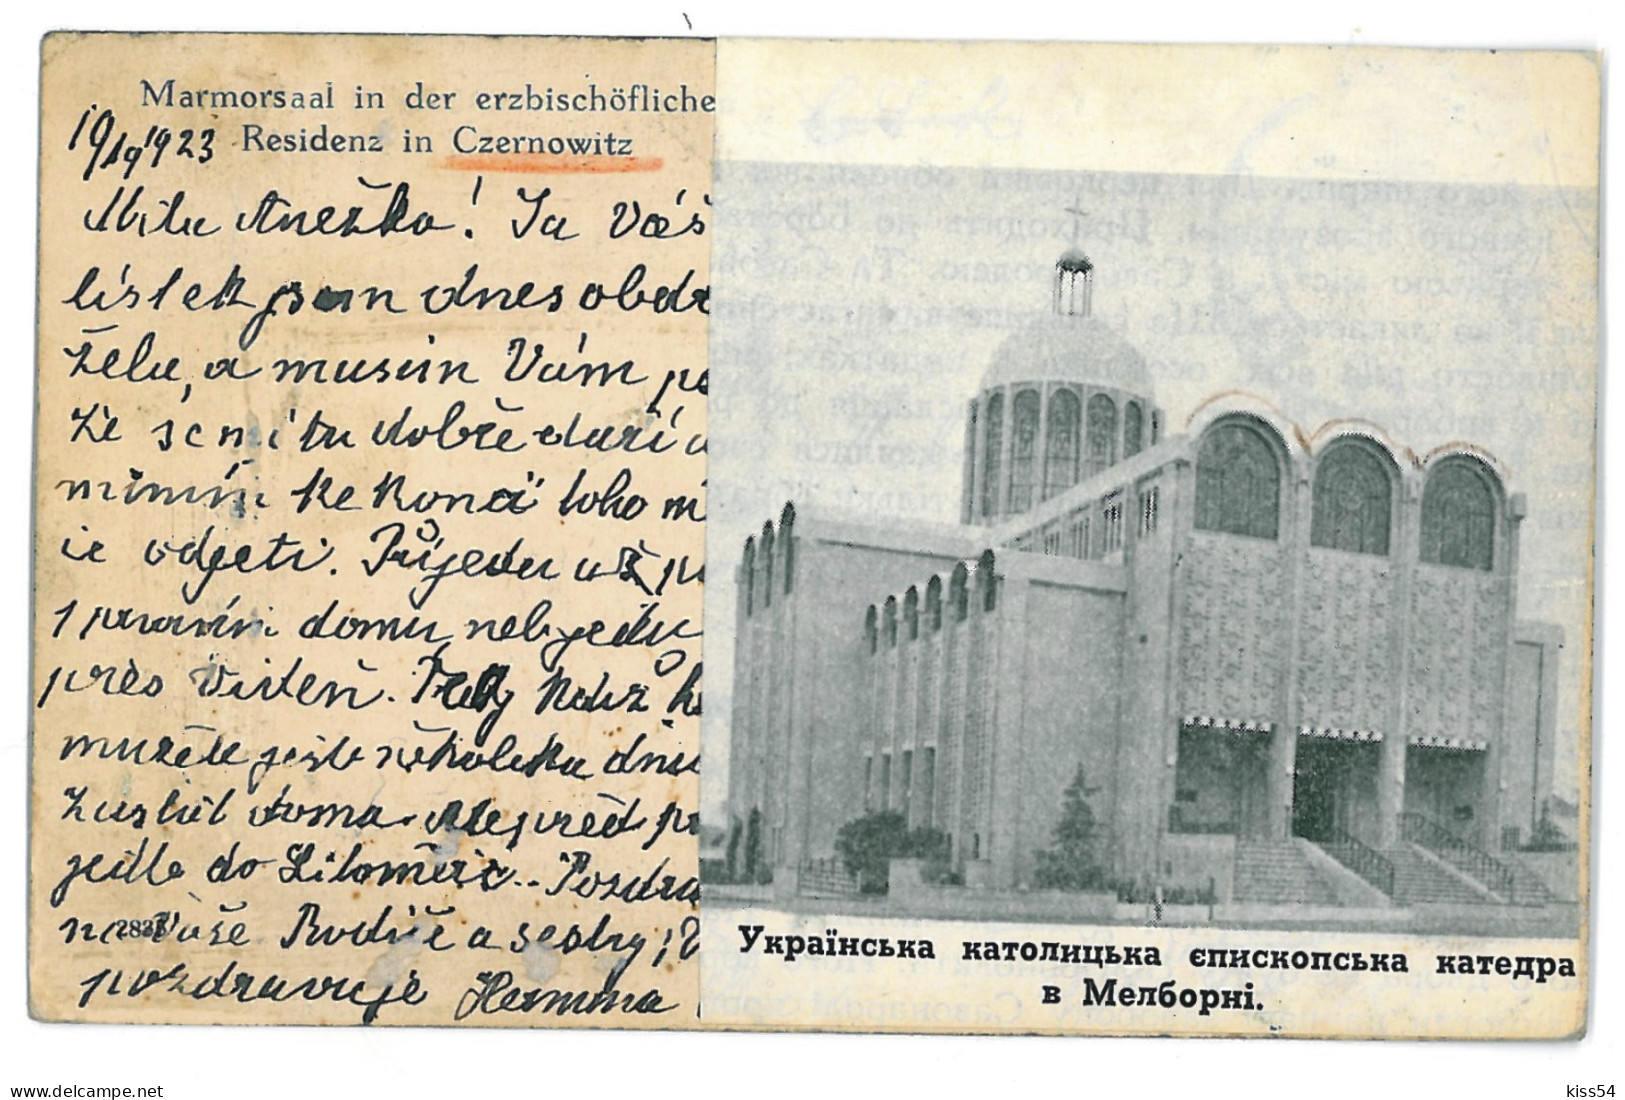 UK 13 - 11270 CZERNOWITZ, Bukowina, Ukraine, Marble Hall - Old Postcard - Used - 1923 - Ukraine